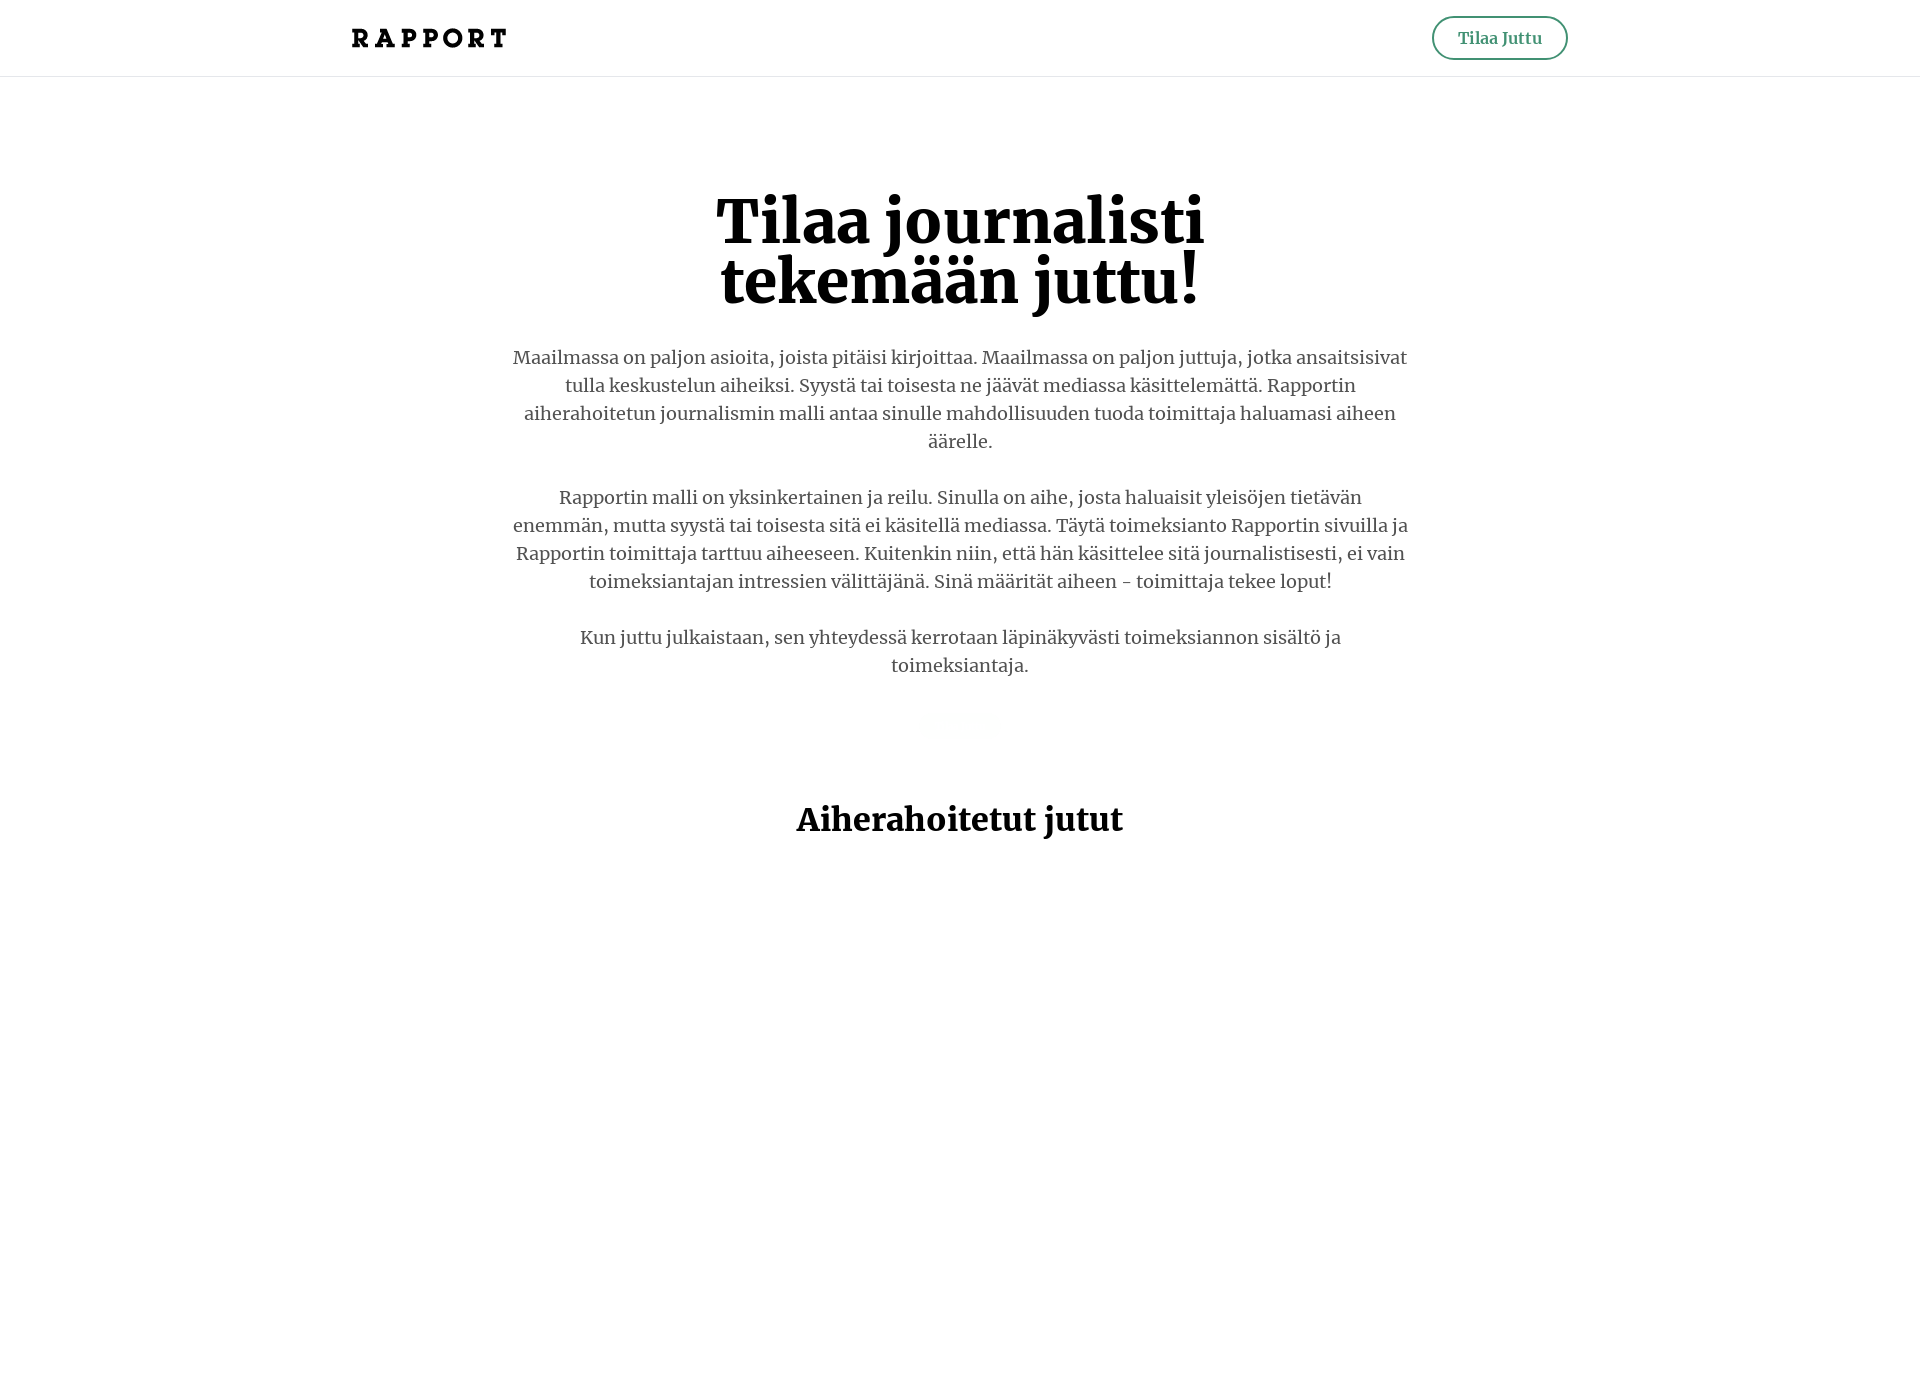 Näyttökuva aiherahoitettu.fi